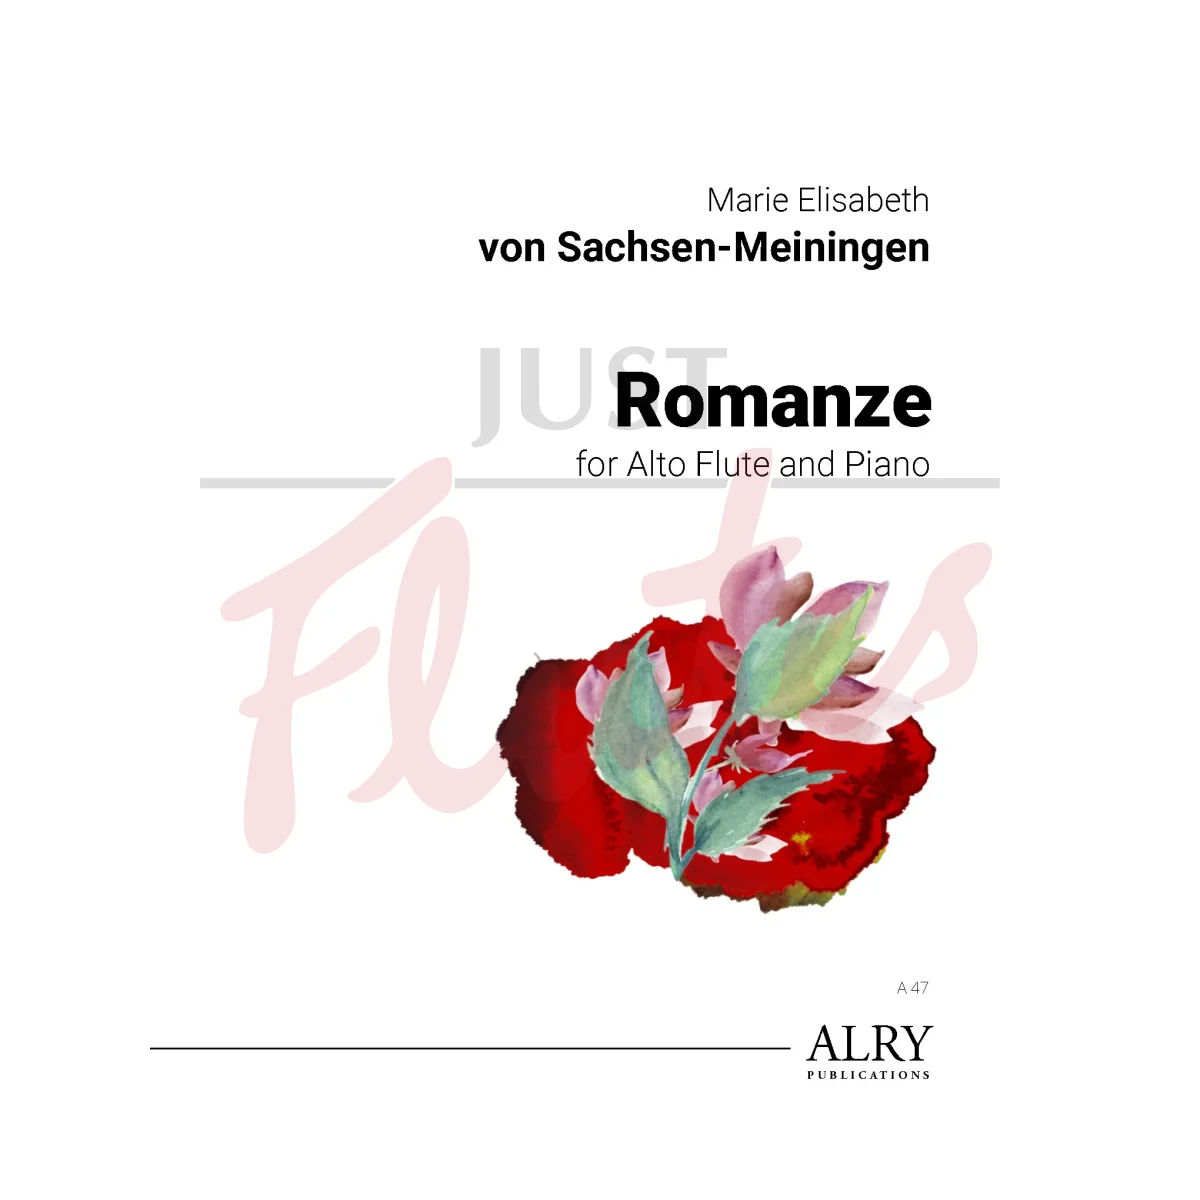 Romanze for Alto Flute and Piano